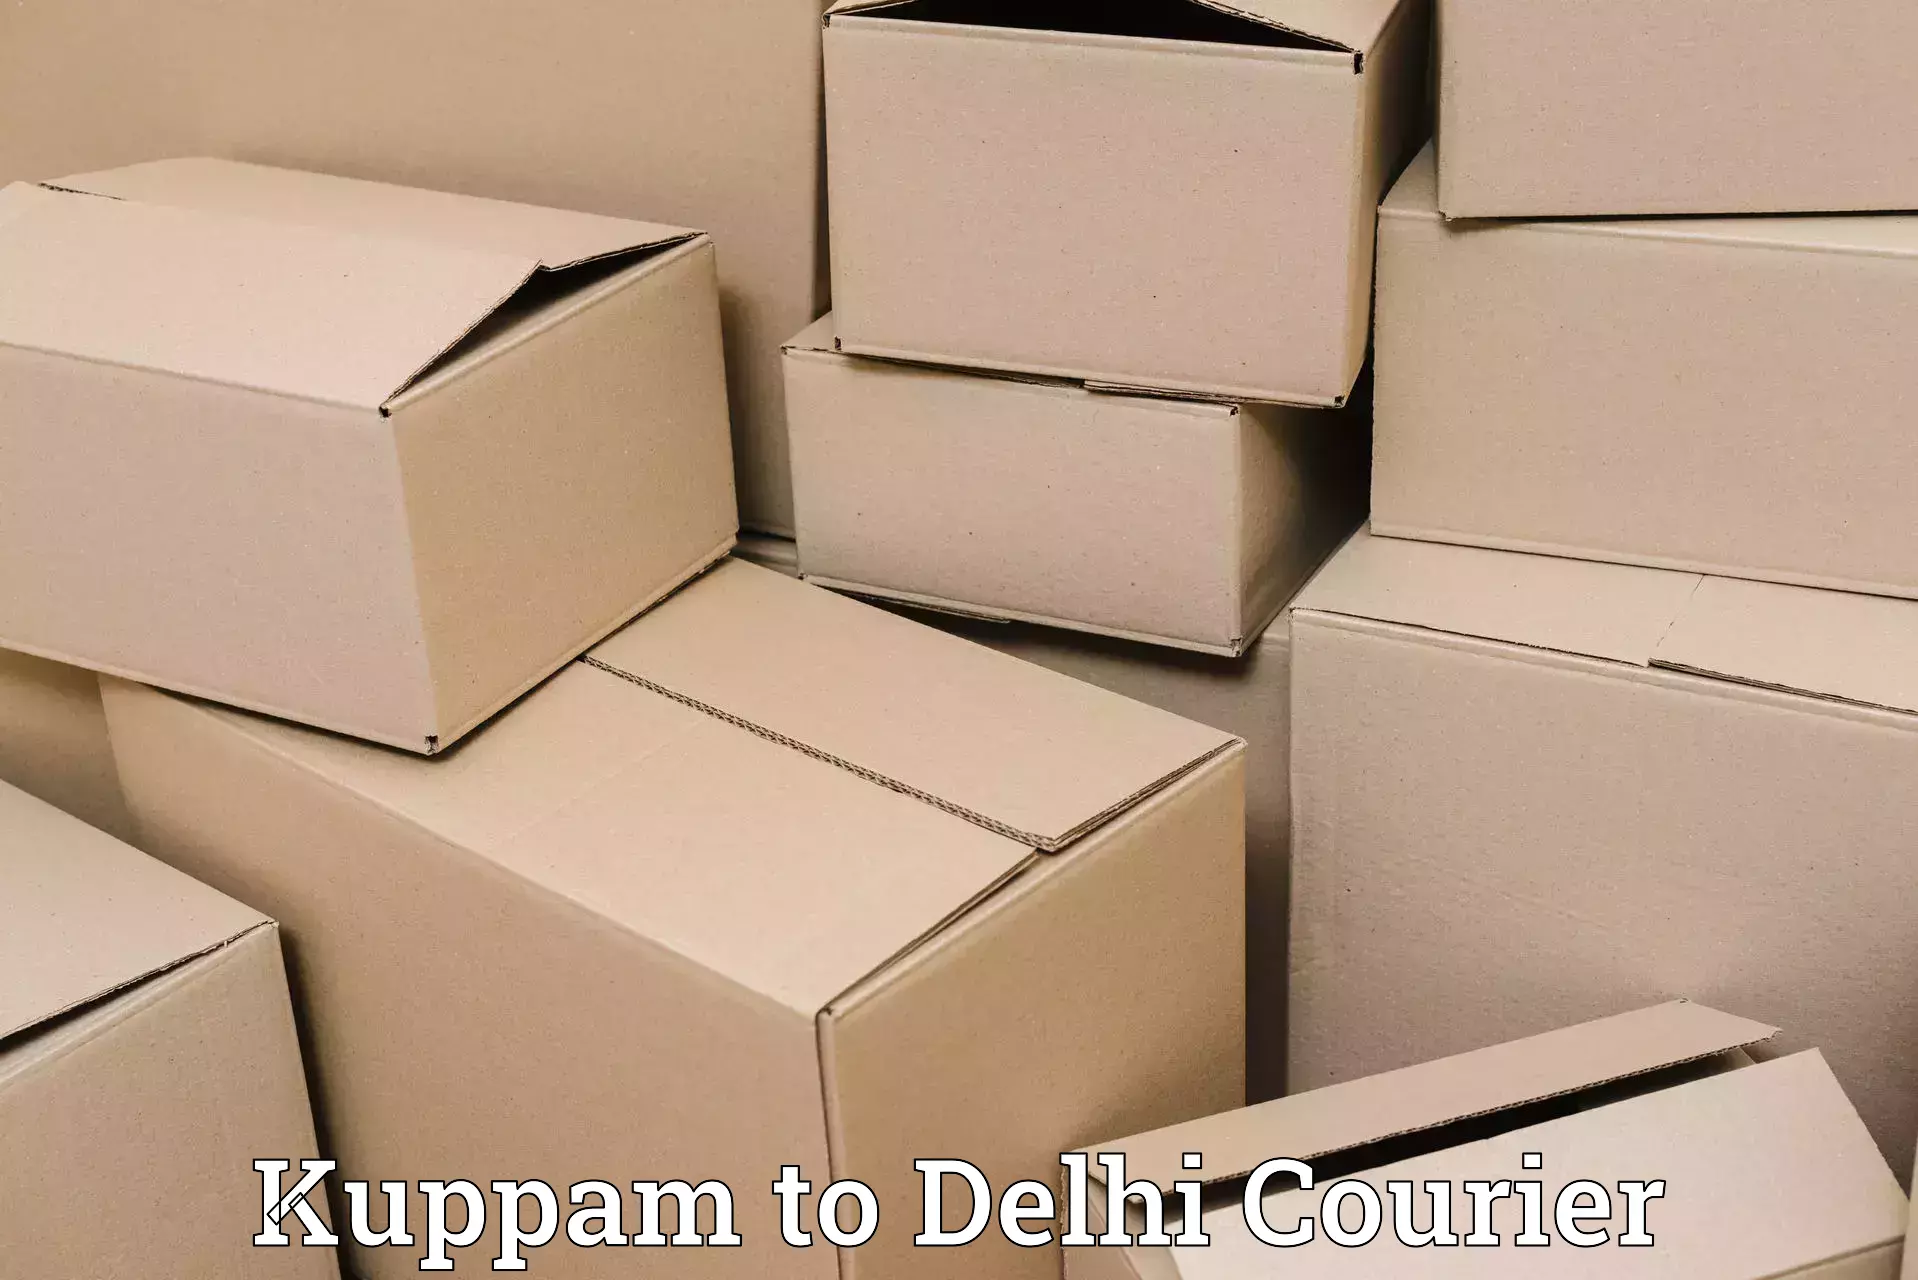 Express courier facilities Kuppam to Jamia Millia Islamia New Delhi